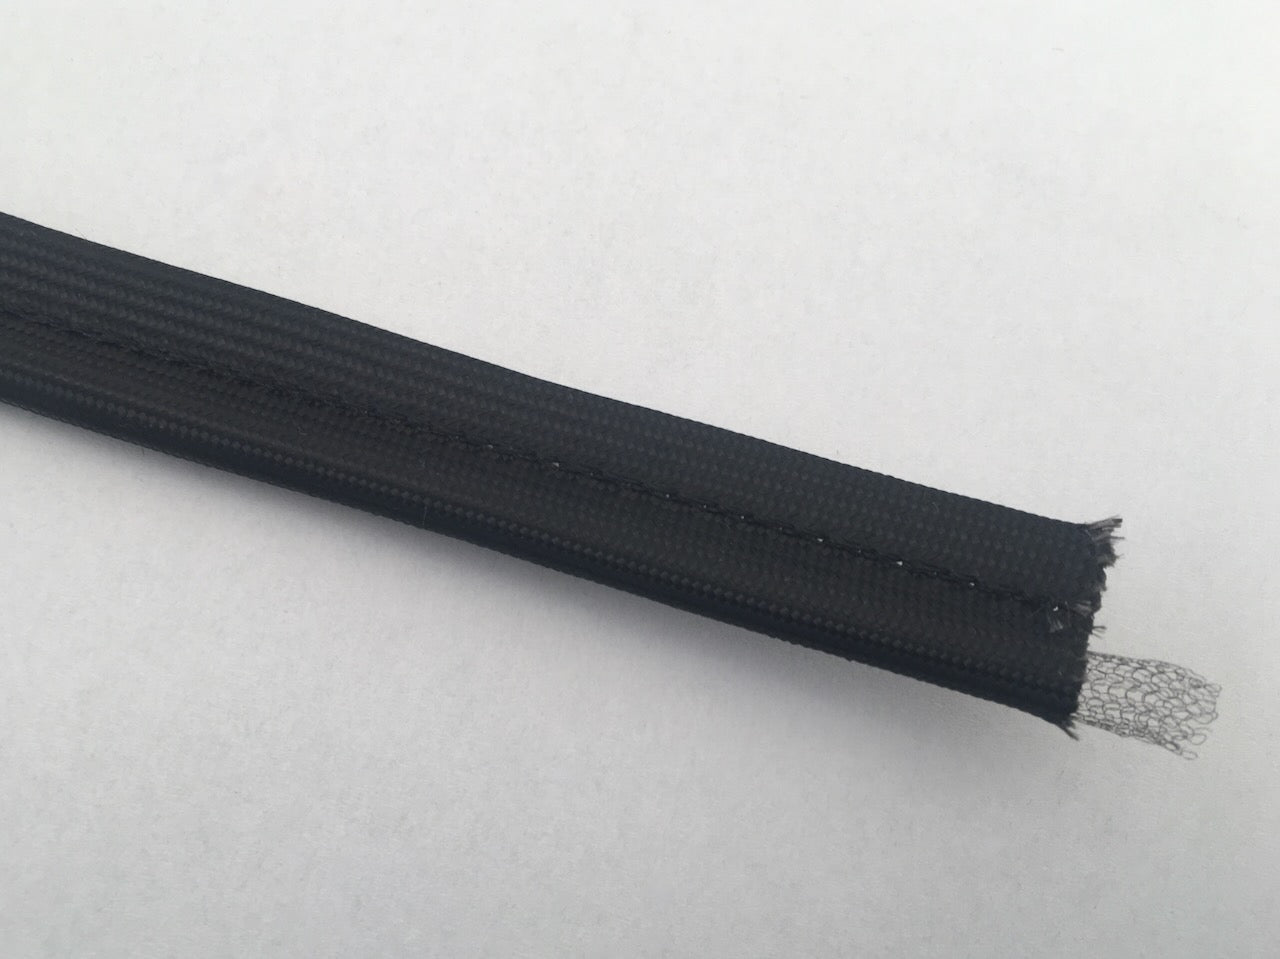 Selbstklebende schwarze Profildichtung 18  x 6 mm Dichtschnur für Kamine